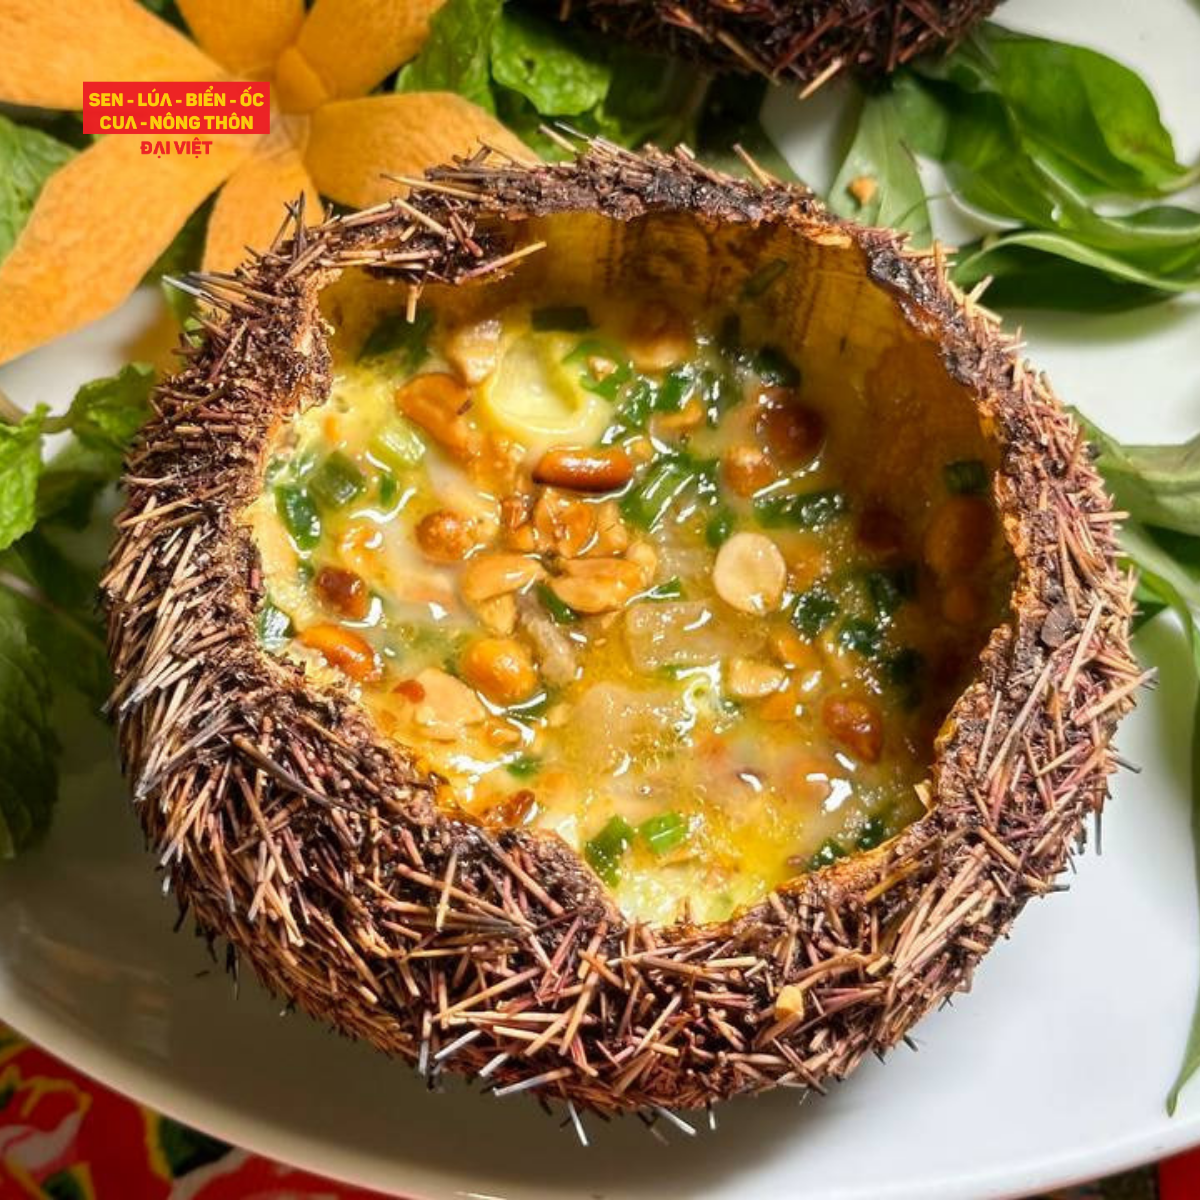  Nhum Nướng Trứng Cút - Grilled Sea Urchin With Quail Egg 